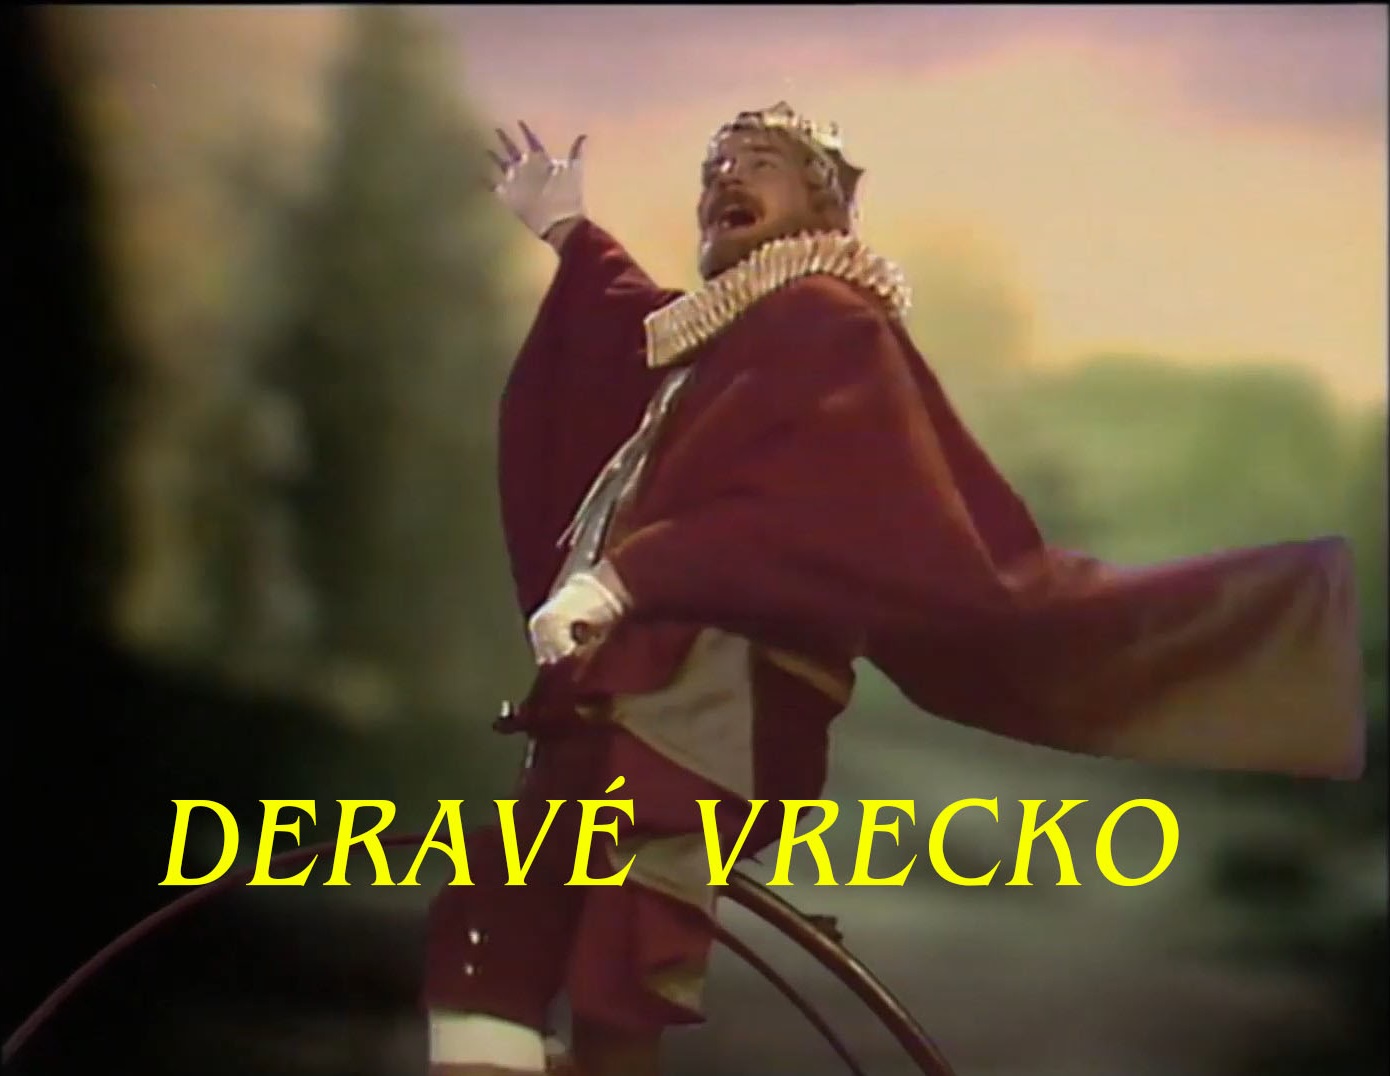 Stiahni si Filmy CZ/SK dabing Derave vrecko (1983)(SK)[TvRip] = CSFD 49%